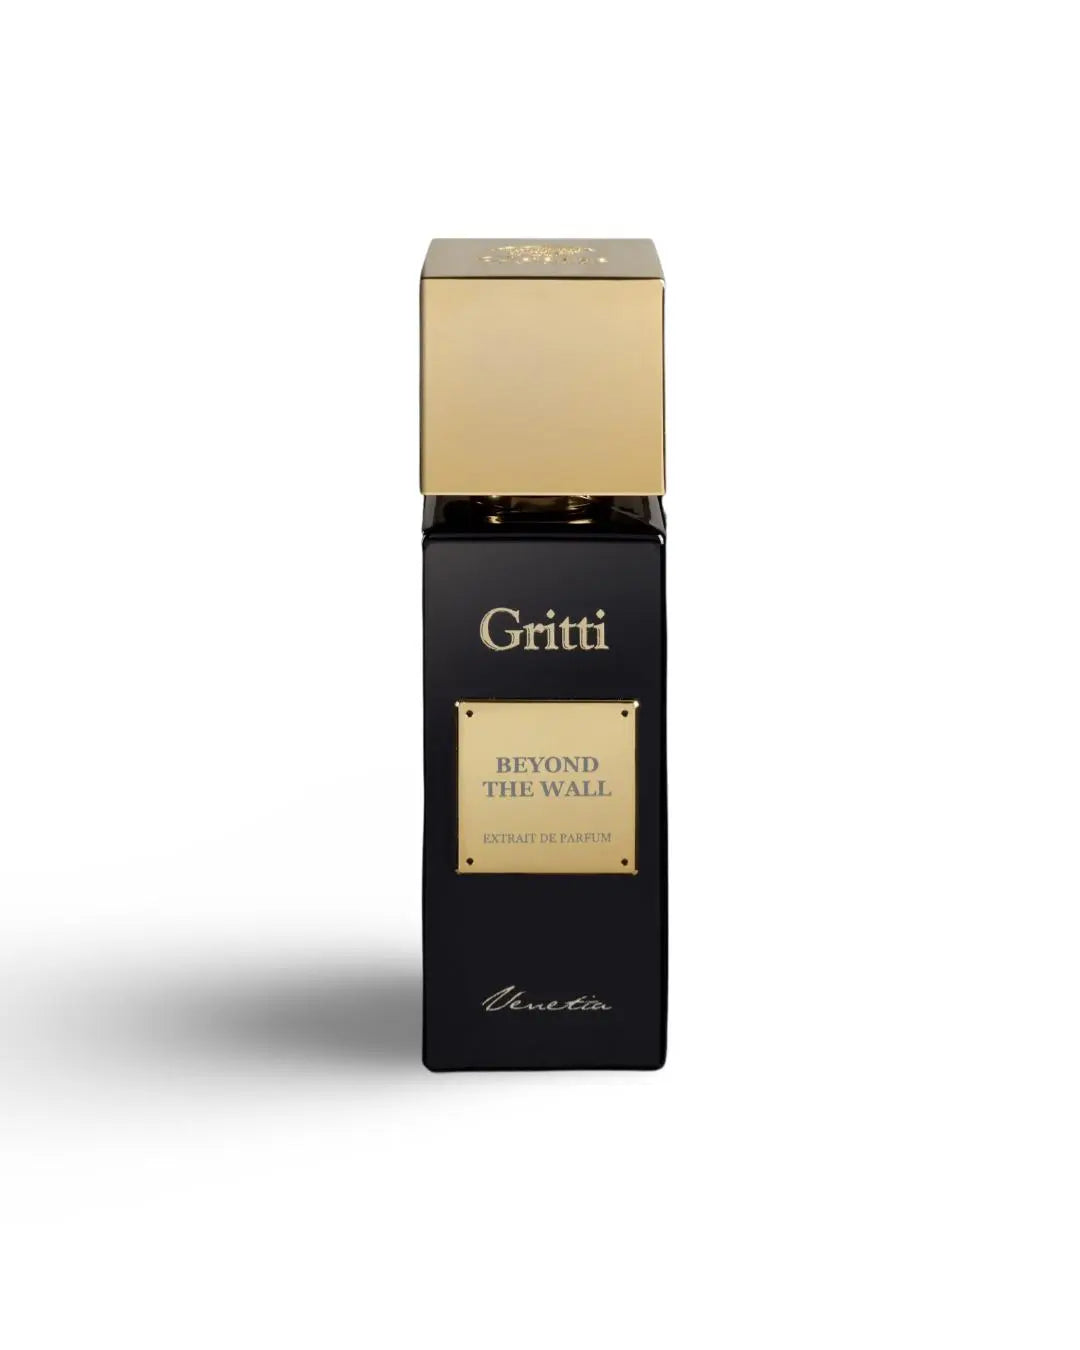 Beyond The Wall Gritti Extrait de Parfum 100 ml